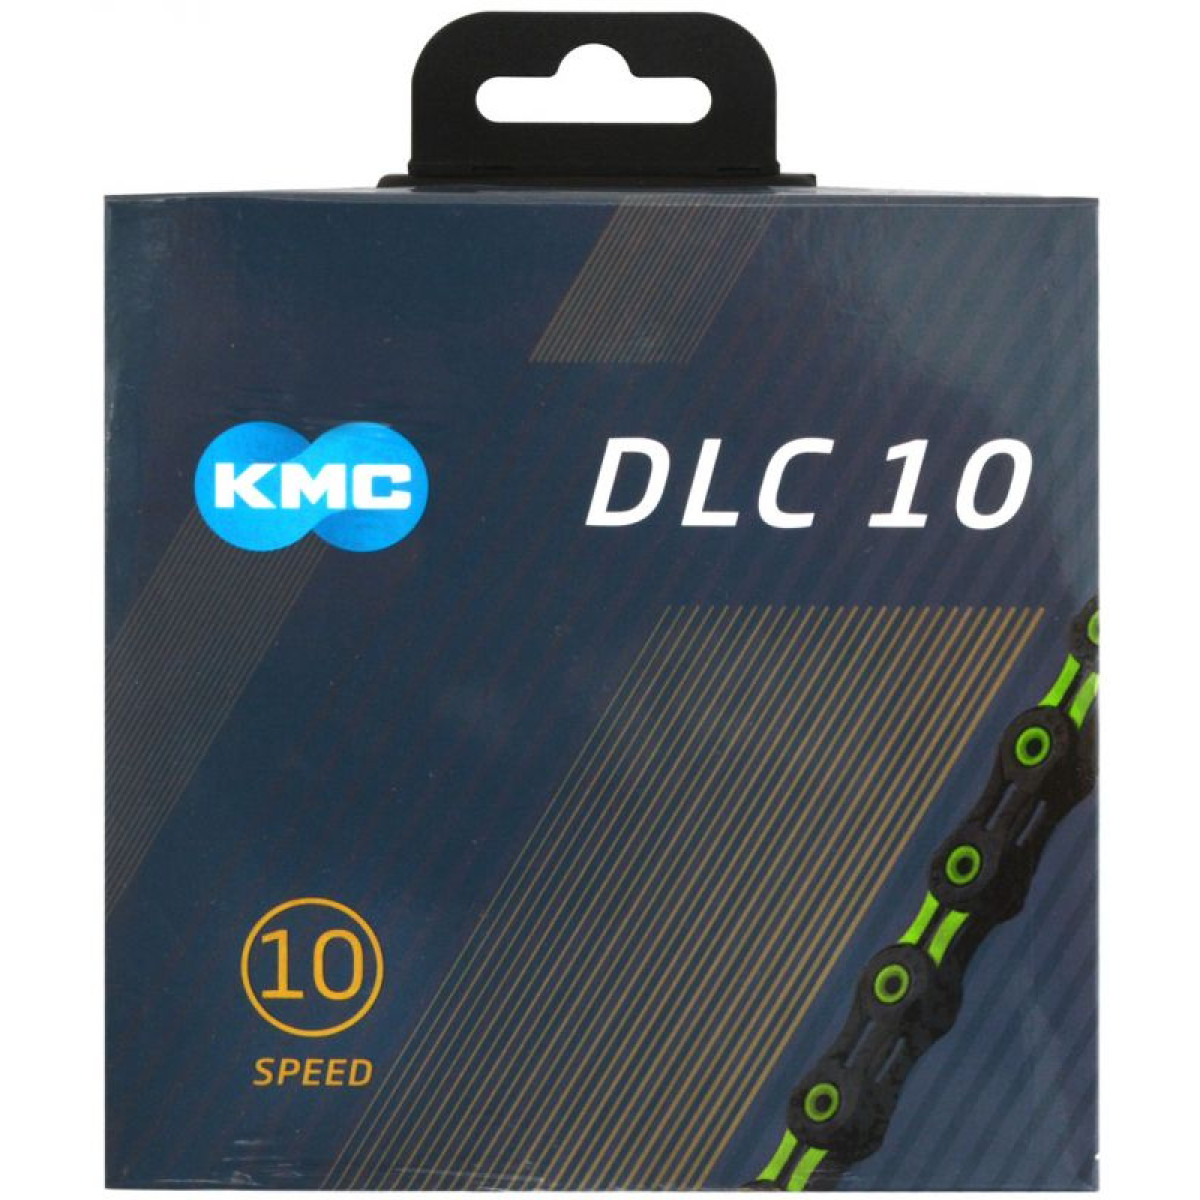 KMC DLC10 grandinė / 10 pavarų / Black - Green 